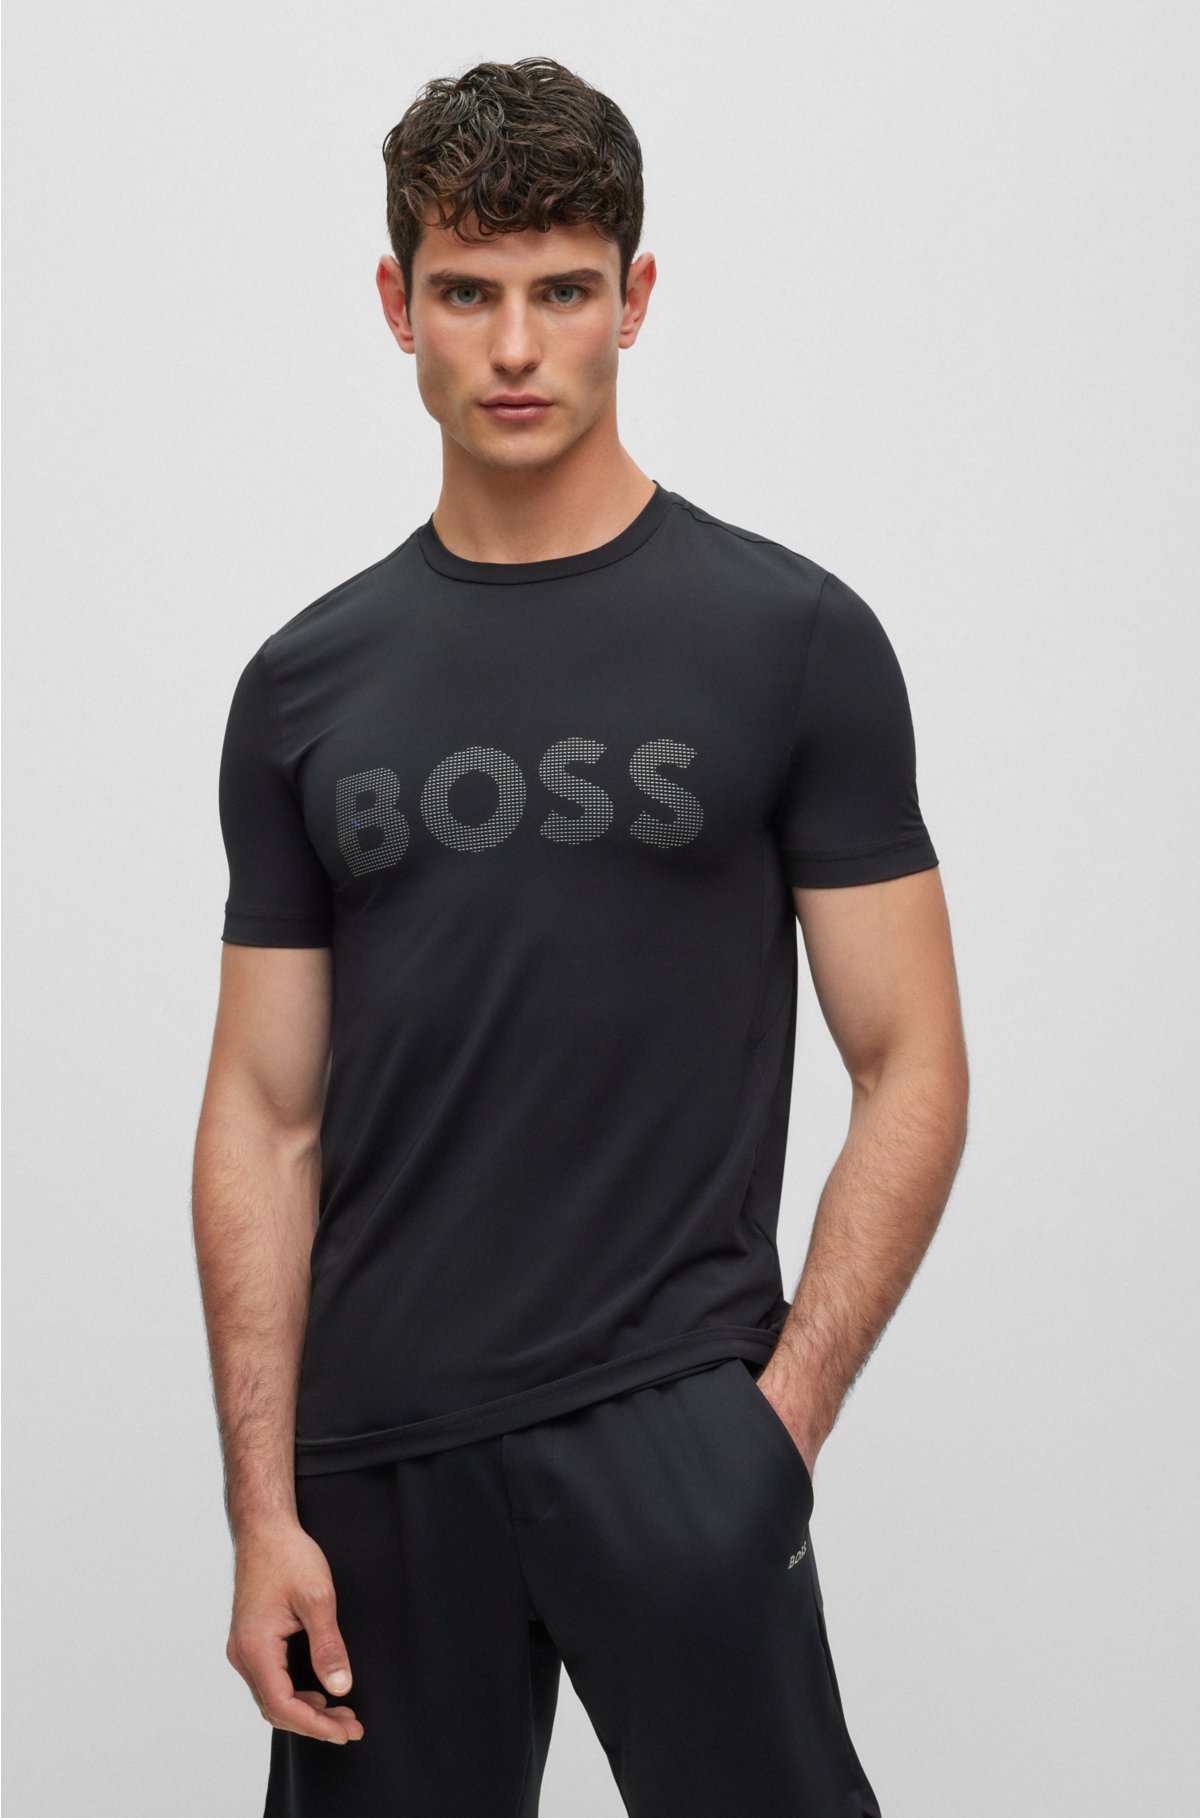 HUGO BOSS  Men's Designer T-Shirts